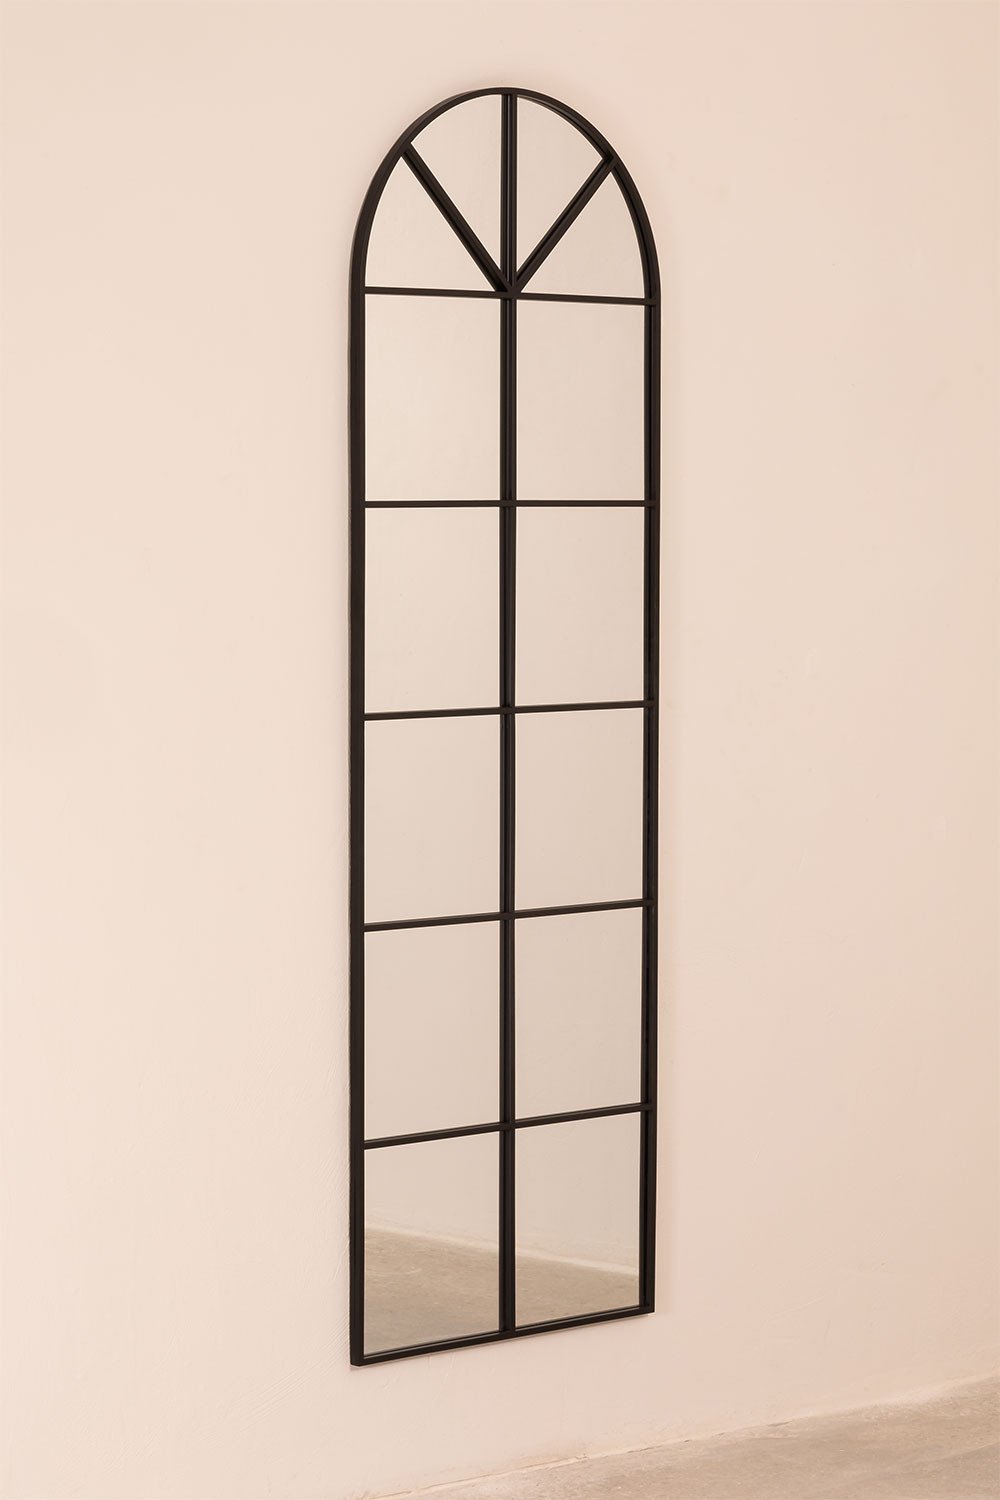 Metalen wandspiegel met raameffect (180x59 cm) Paola L, galerij beeld 2